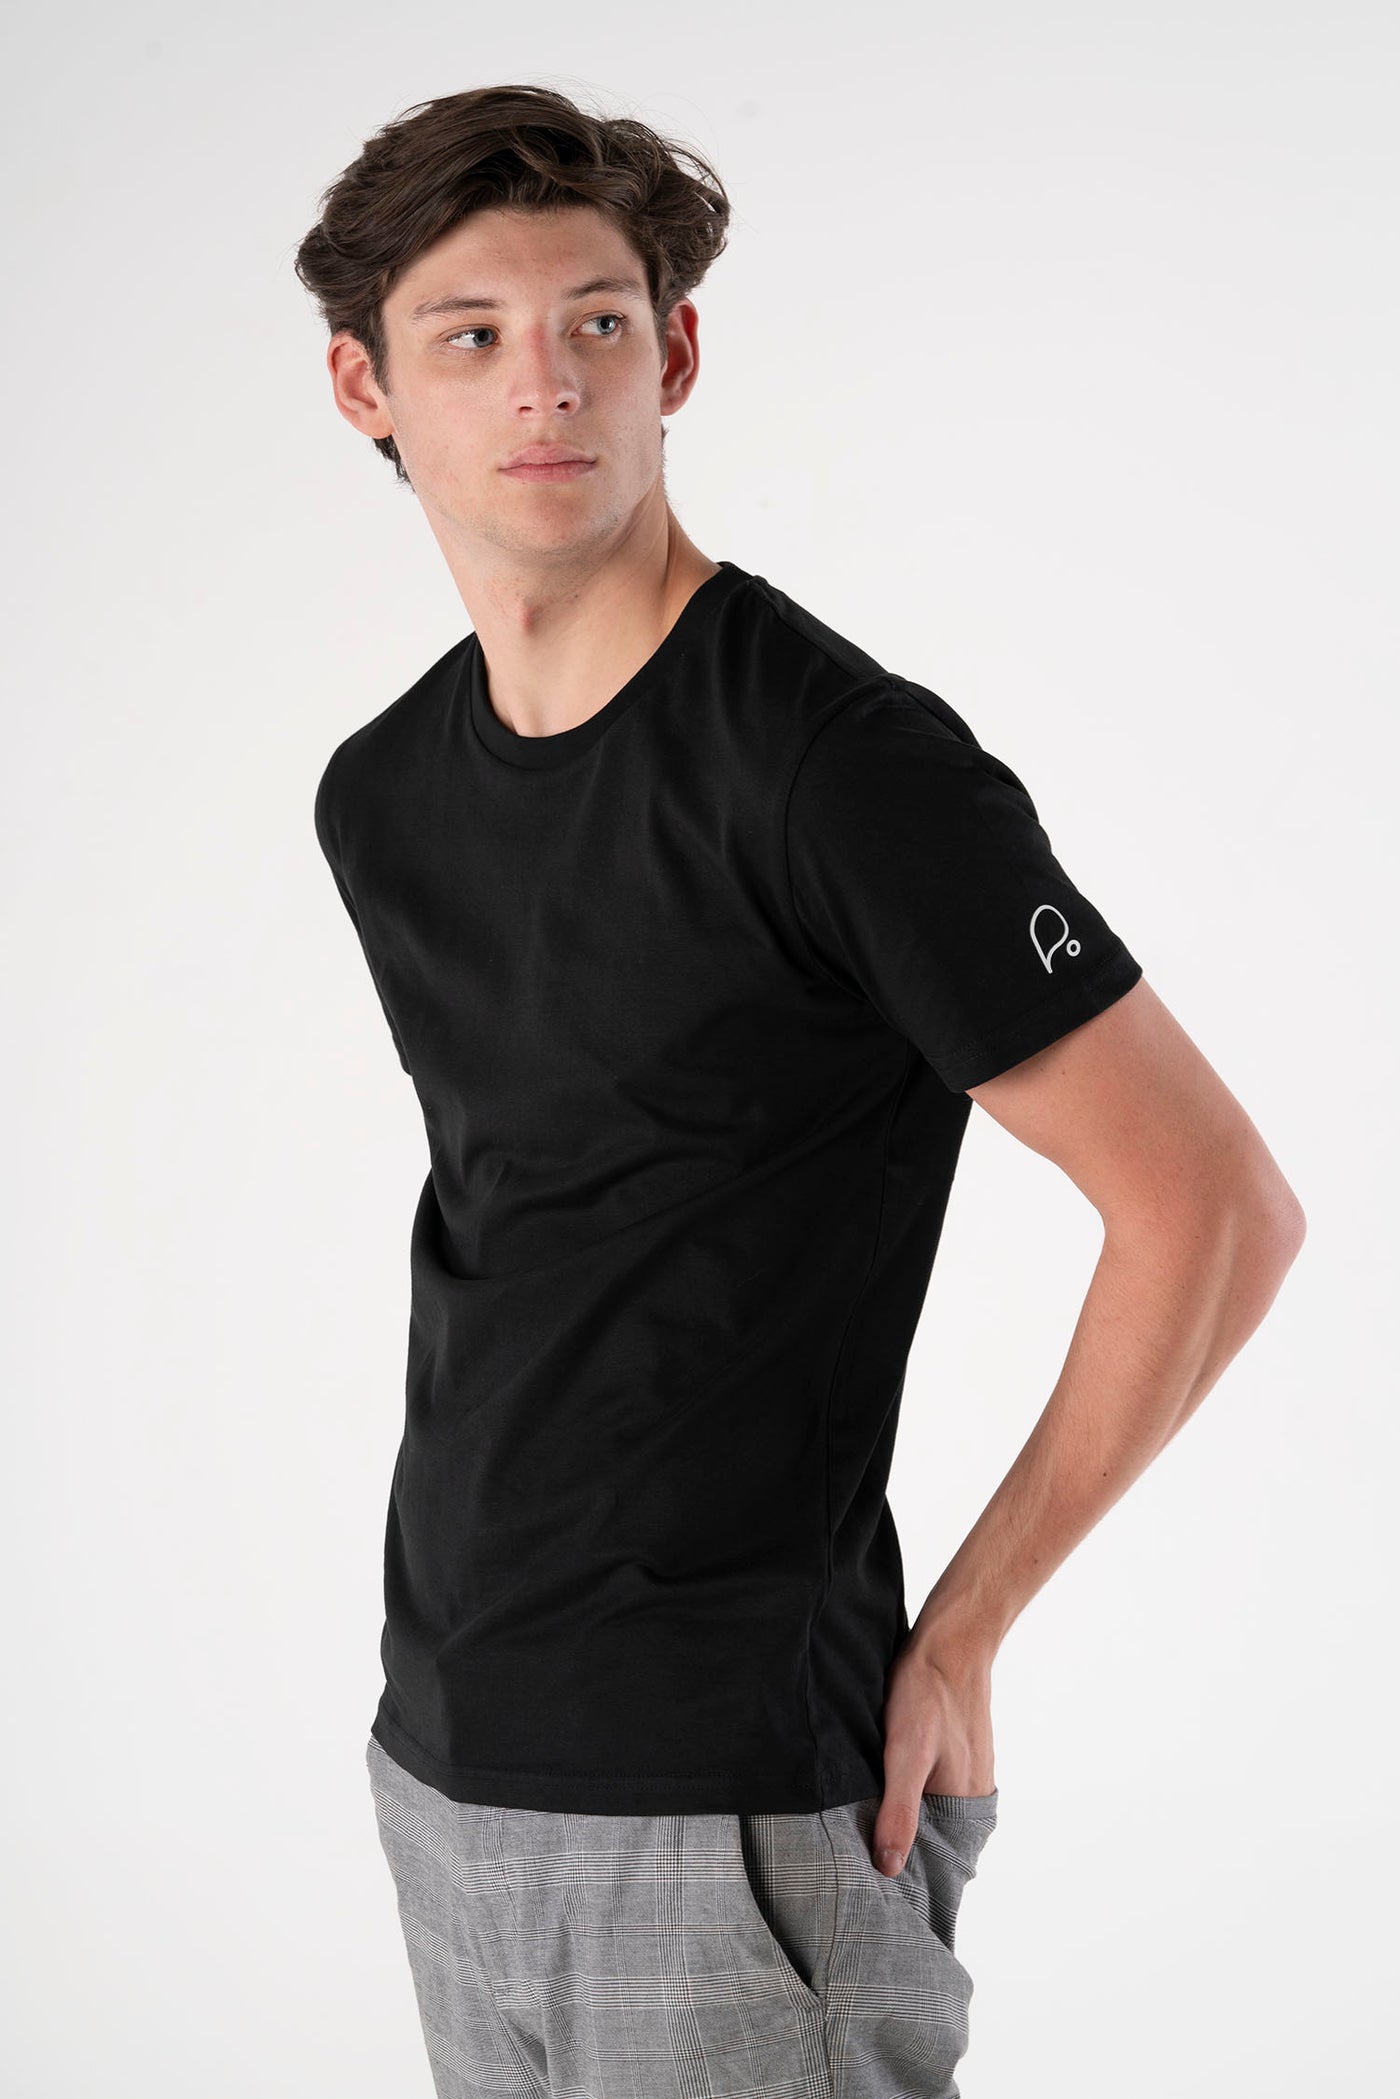 Signature Black - Evolve Collection T-shirt-Men T-shirts-PIRKANI